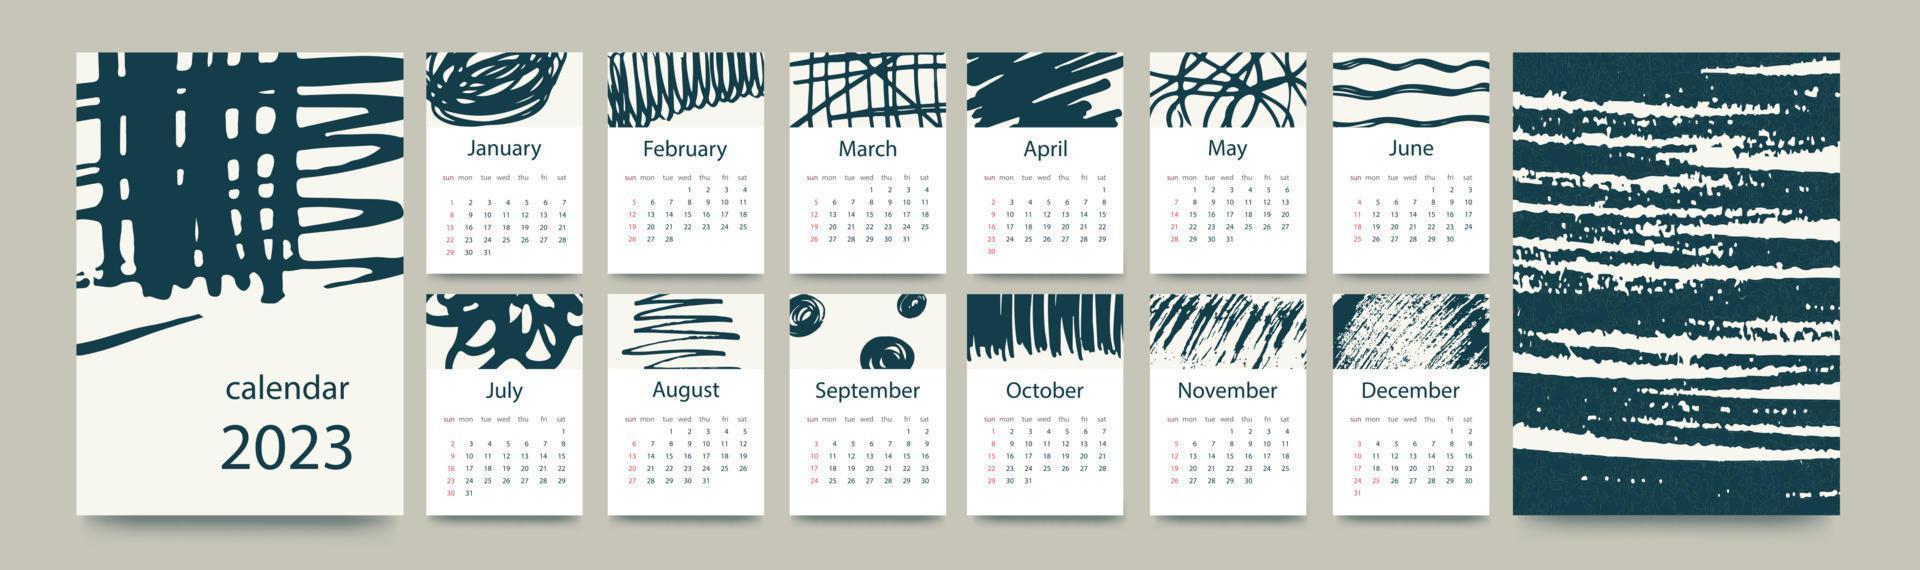 kalendermall för 2023. vertikal design med med abstrakta handritade doodles. redigerbar sidmall med a4-illustrationer, set om 12 månader med omslag. vektor illustration.